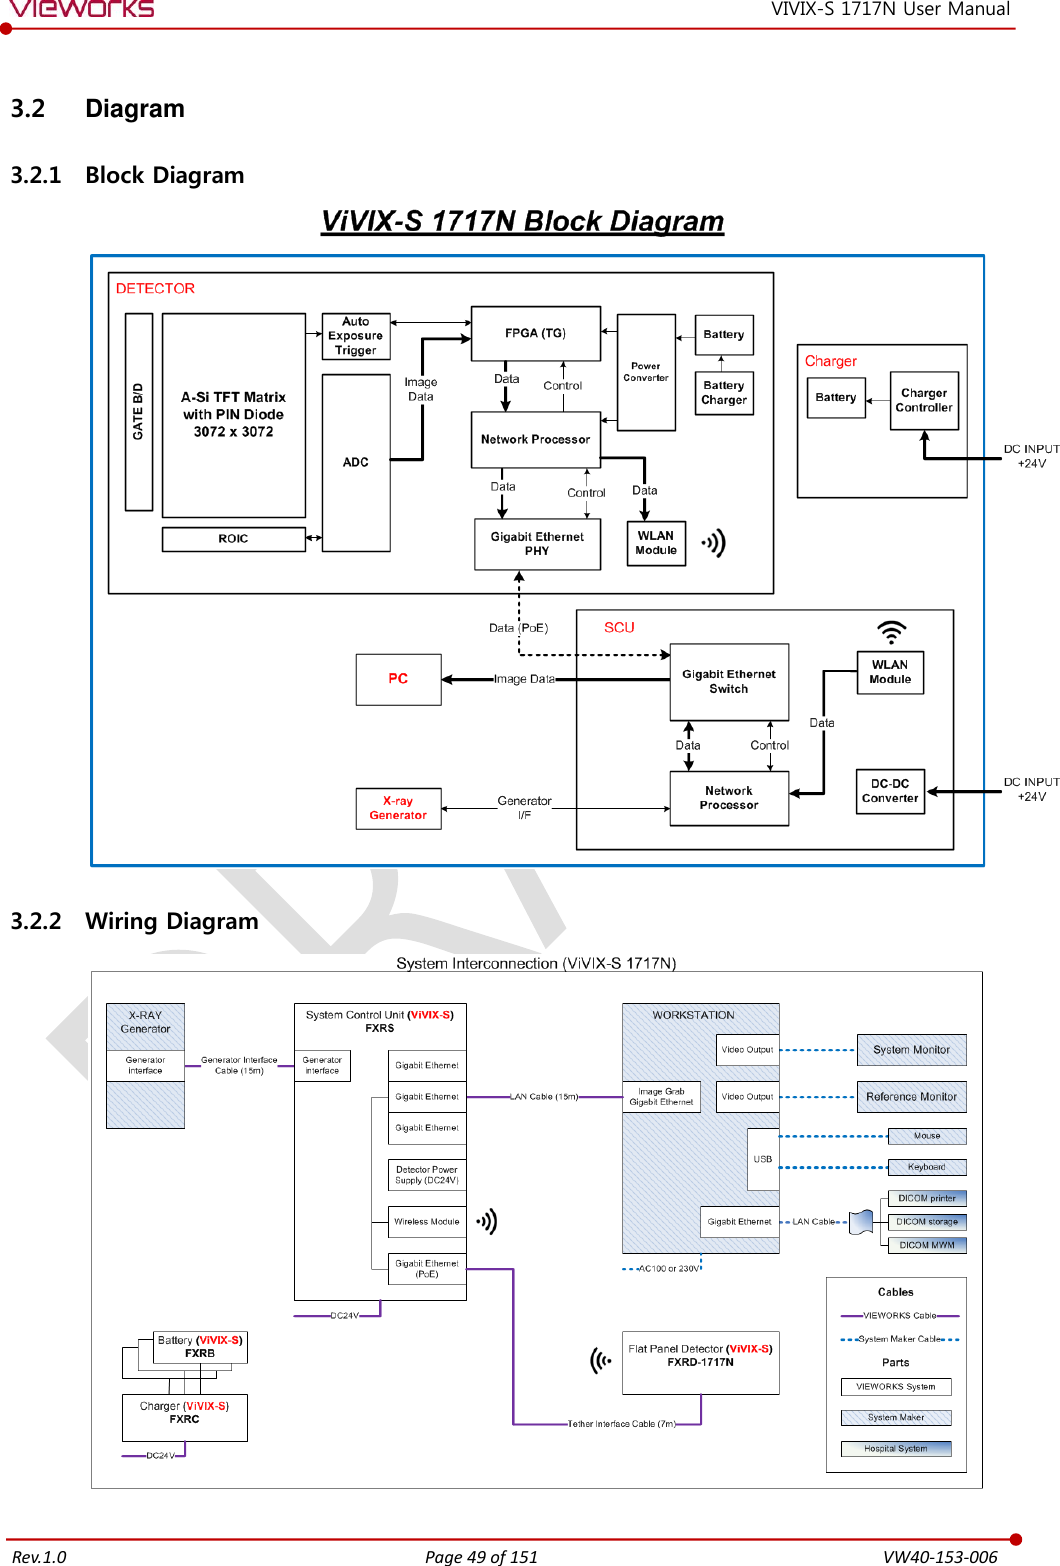   Rev.1.0 Page 49 of 151  VW40-153-006 VIVIX-S 1717N User Manual 3.2  Diagram 3.2.1 Block Diagram  3.2.2 Wiring Diagram   